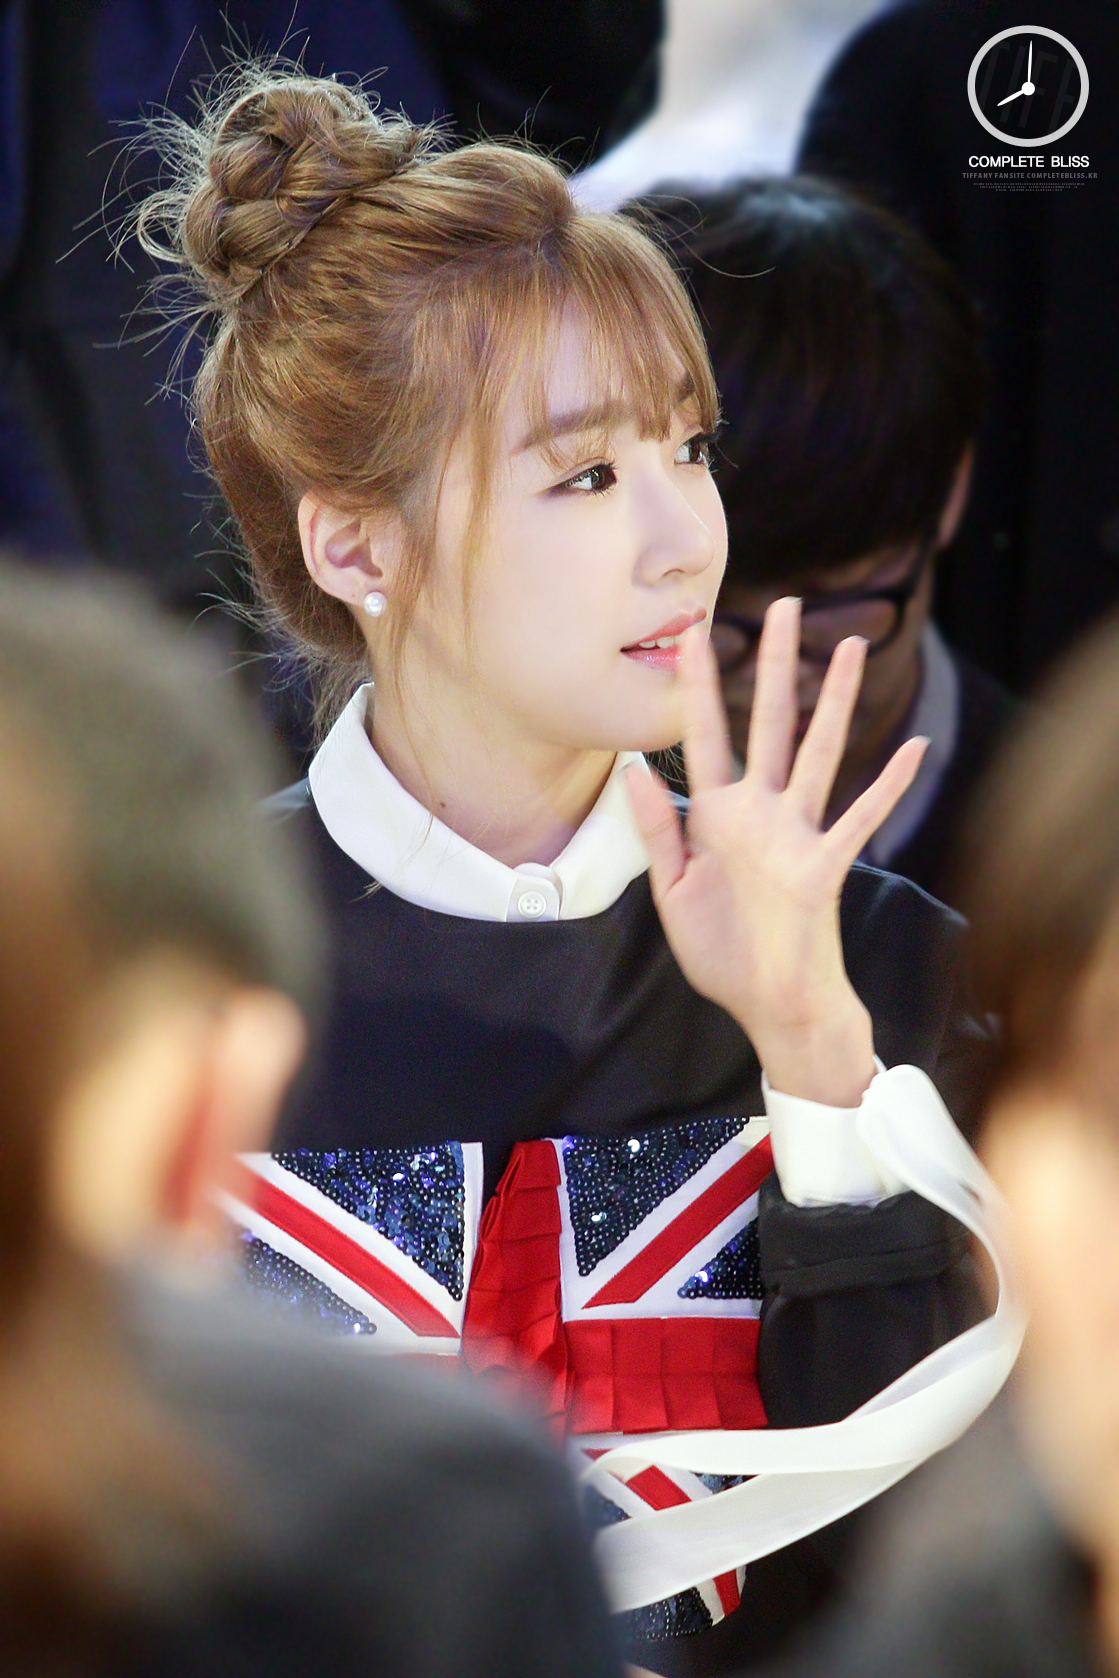 [PIC][20-10-2014]Tiffany xuất hiện tại buổi ra mắt BTS mới của thương hiệu "Arche" trong khuôn khổ tuần Lễ thời trang "2015 S/S SEOUL FASHION WEEK" vào chiều nay 15985491853_4e2c38427e_o